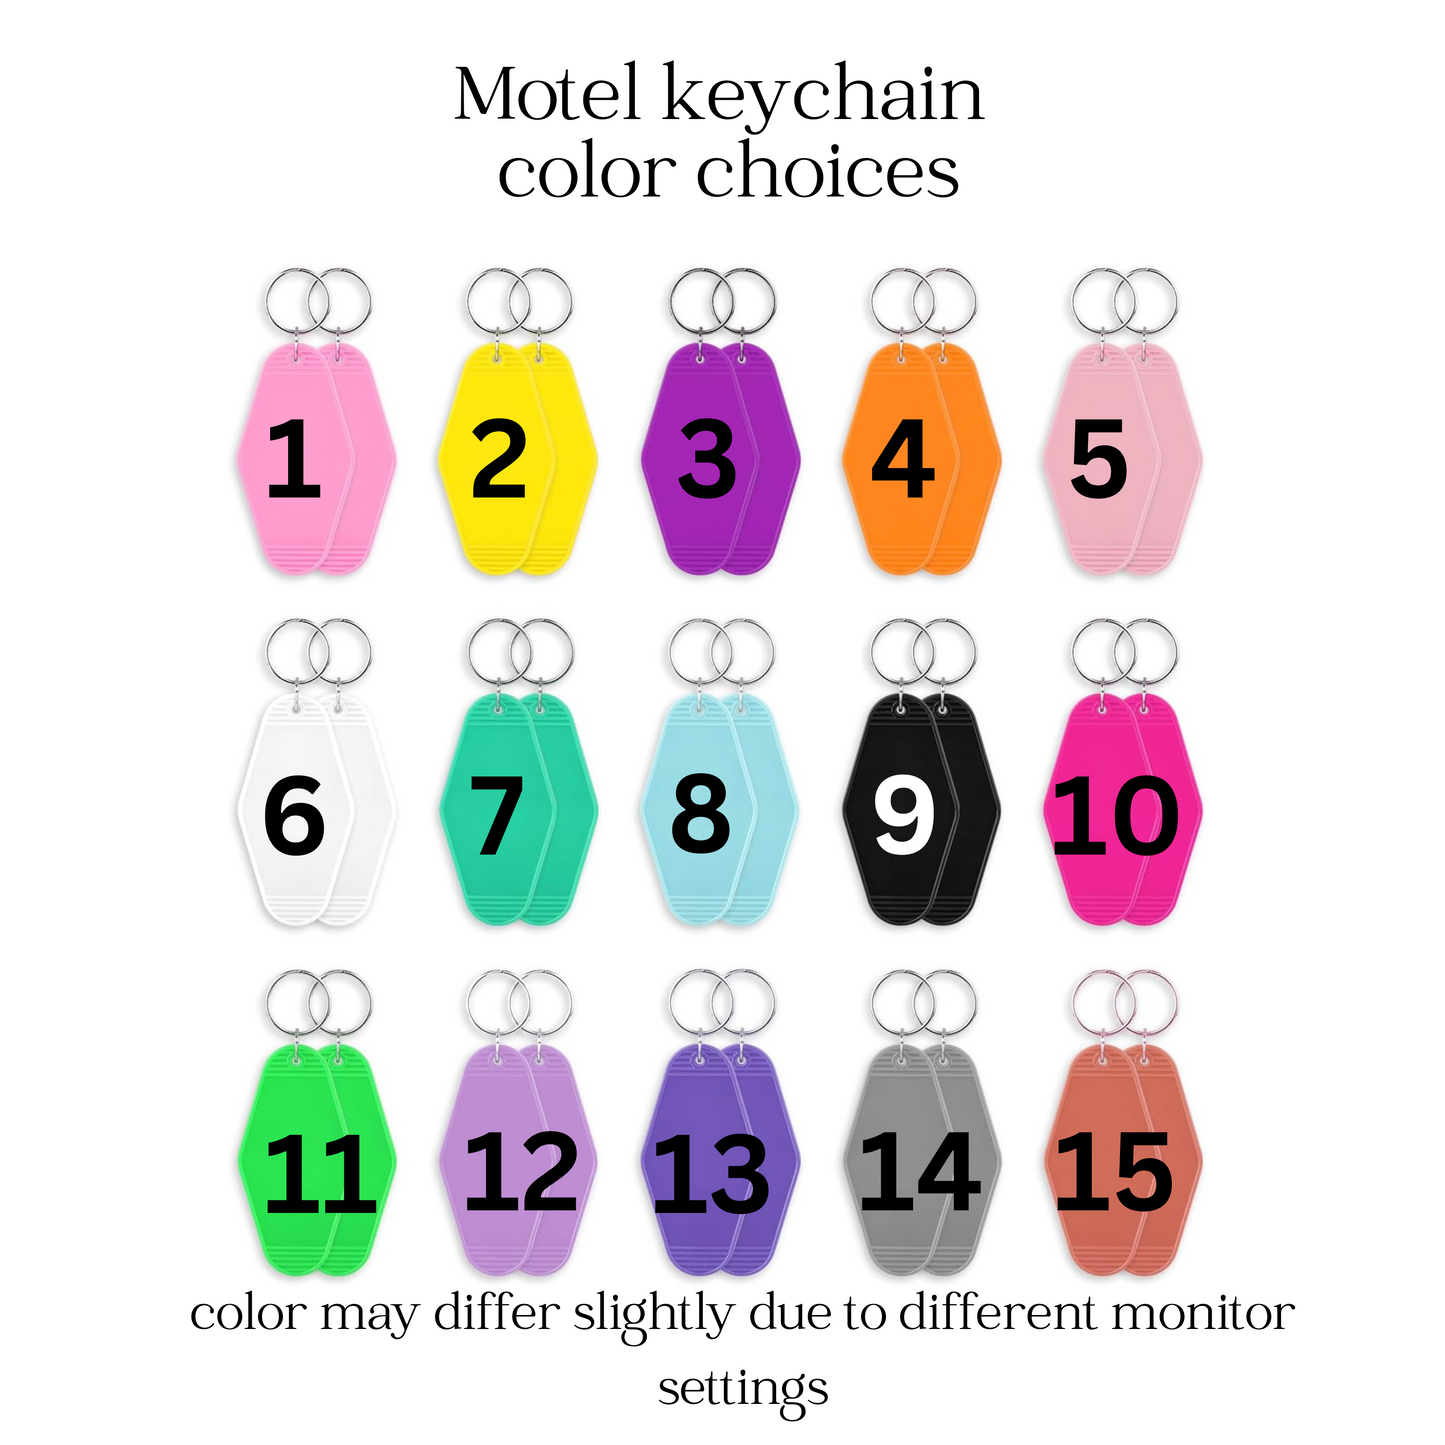 Lock your car Motel keychain